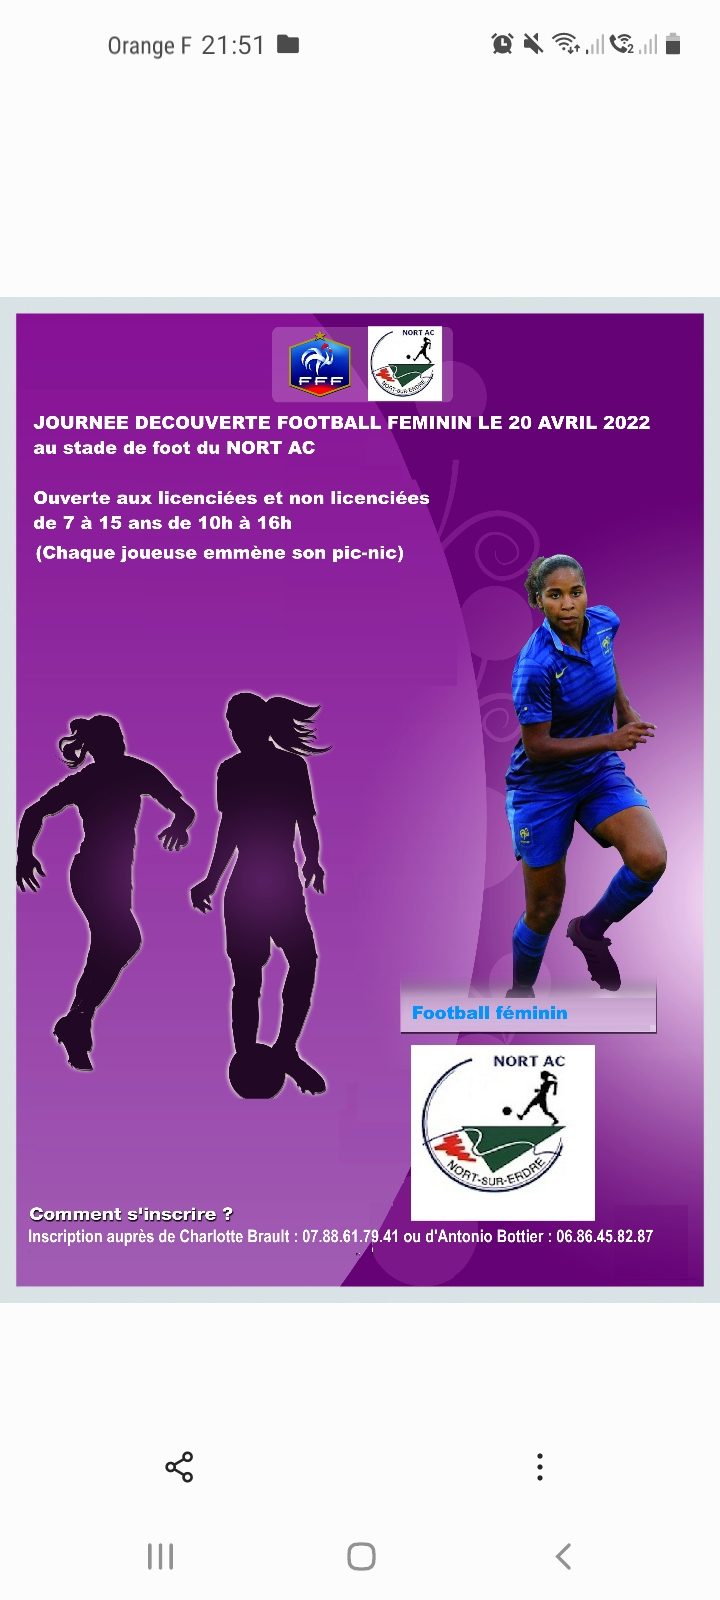 journée découverte football féminin 7 screenshot 20220326 215127 gallery 1